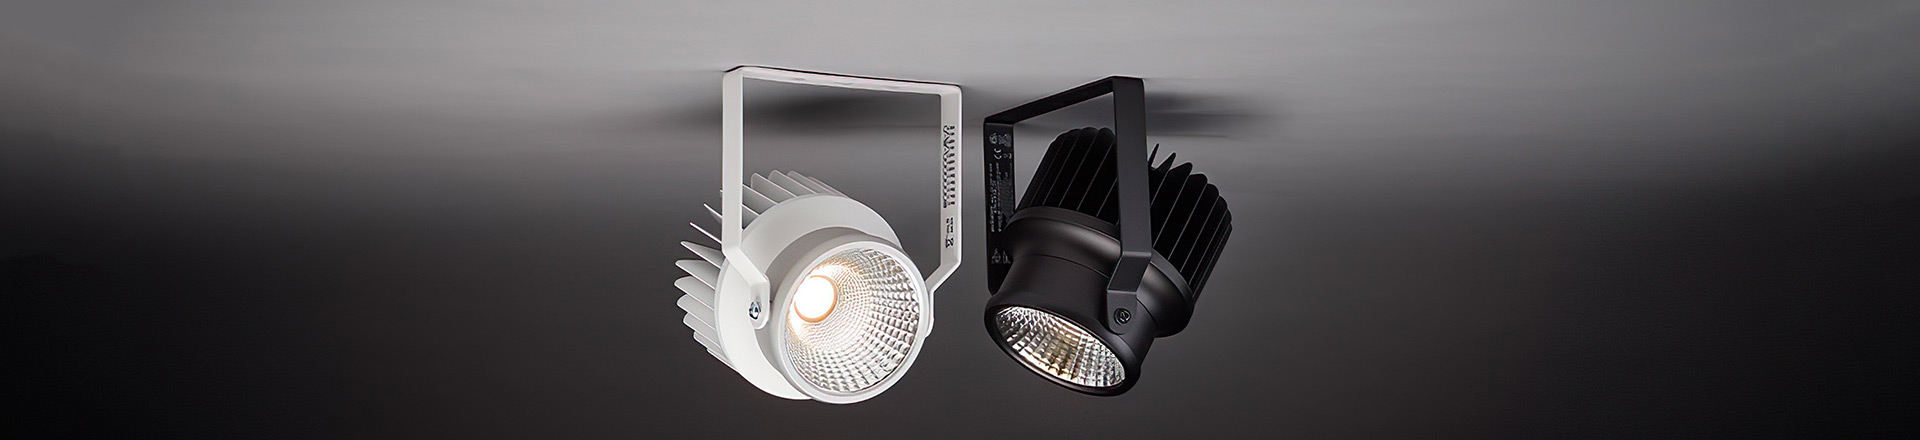 ETC dodaje nowe akcesoria do produktów LED ArcSystem Pro